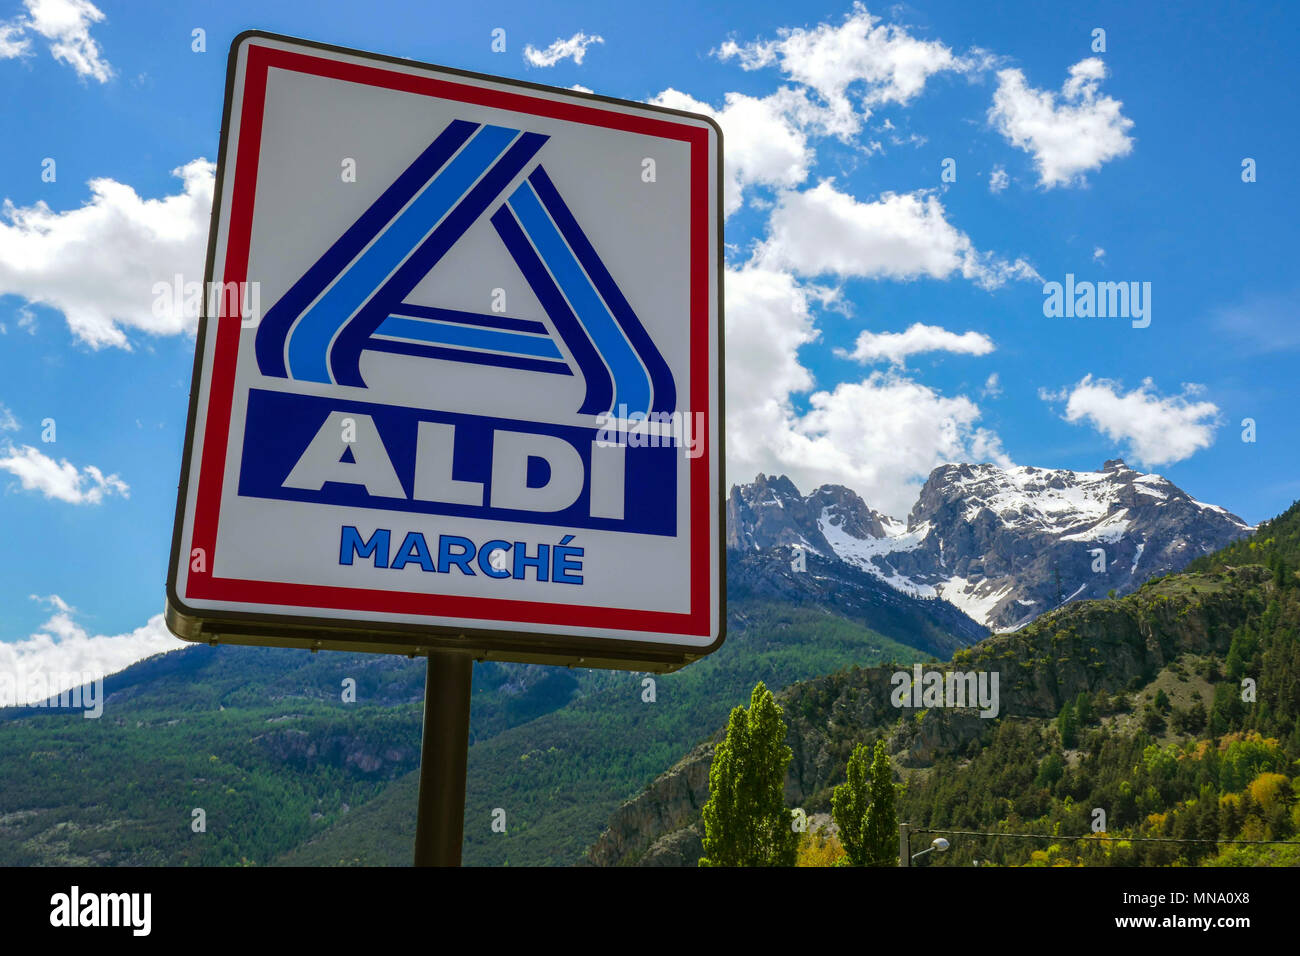 Aldi Marche sign against blue sky, Briancon, France Stock Photo